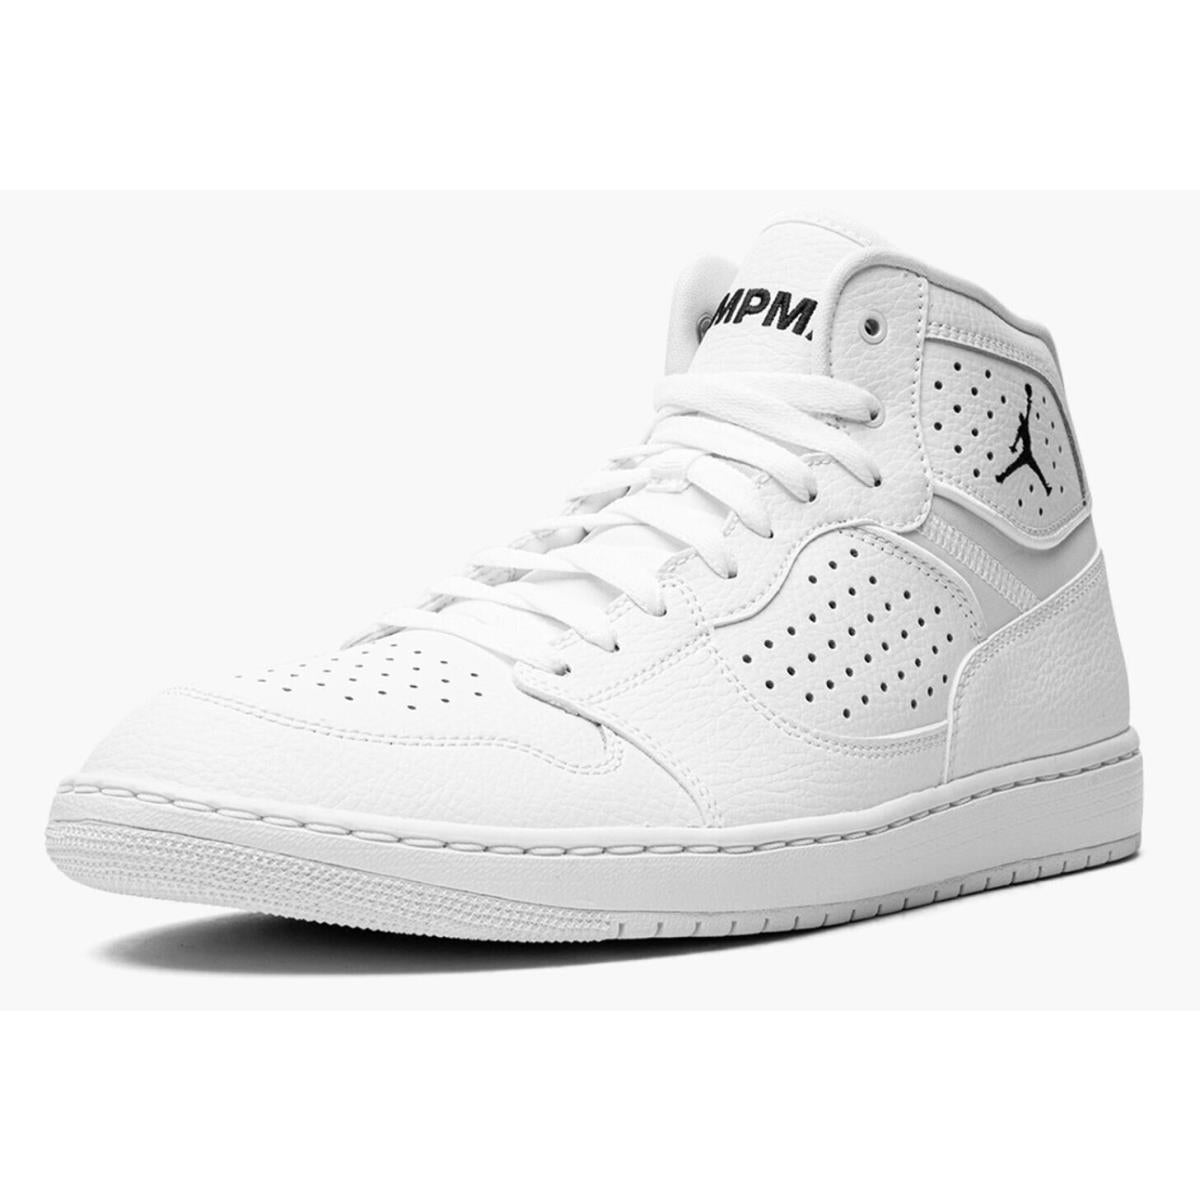 Nike Jordan Access Men's Hi Top Trainers Sneakers Basketball Shoes AR3762-100